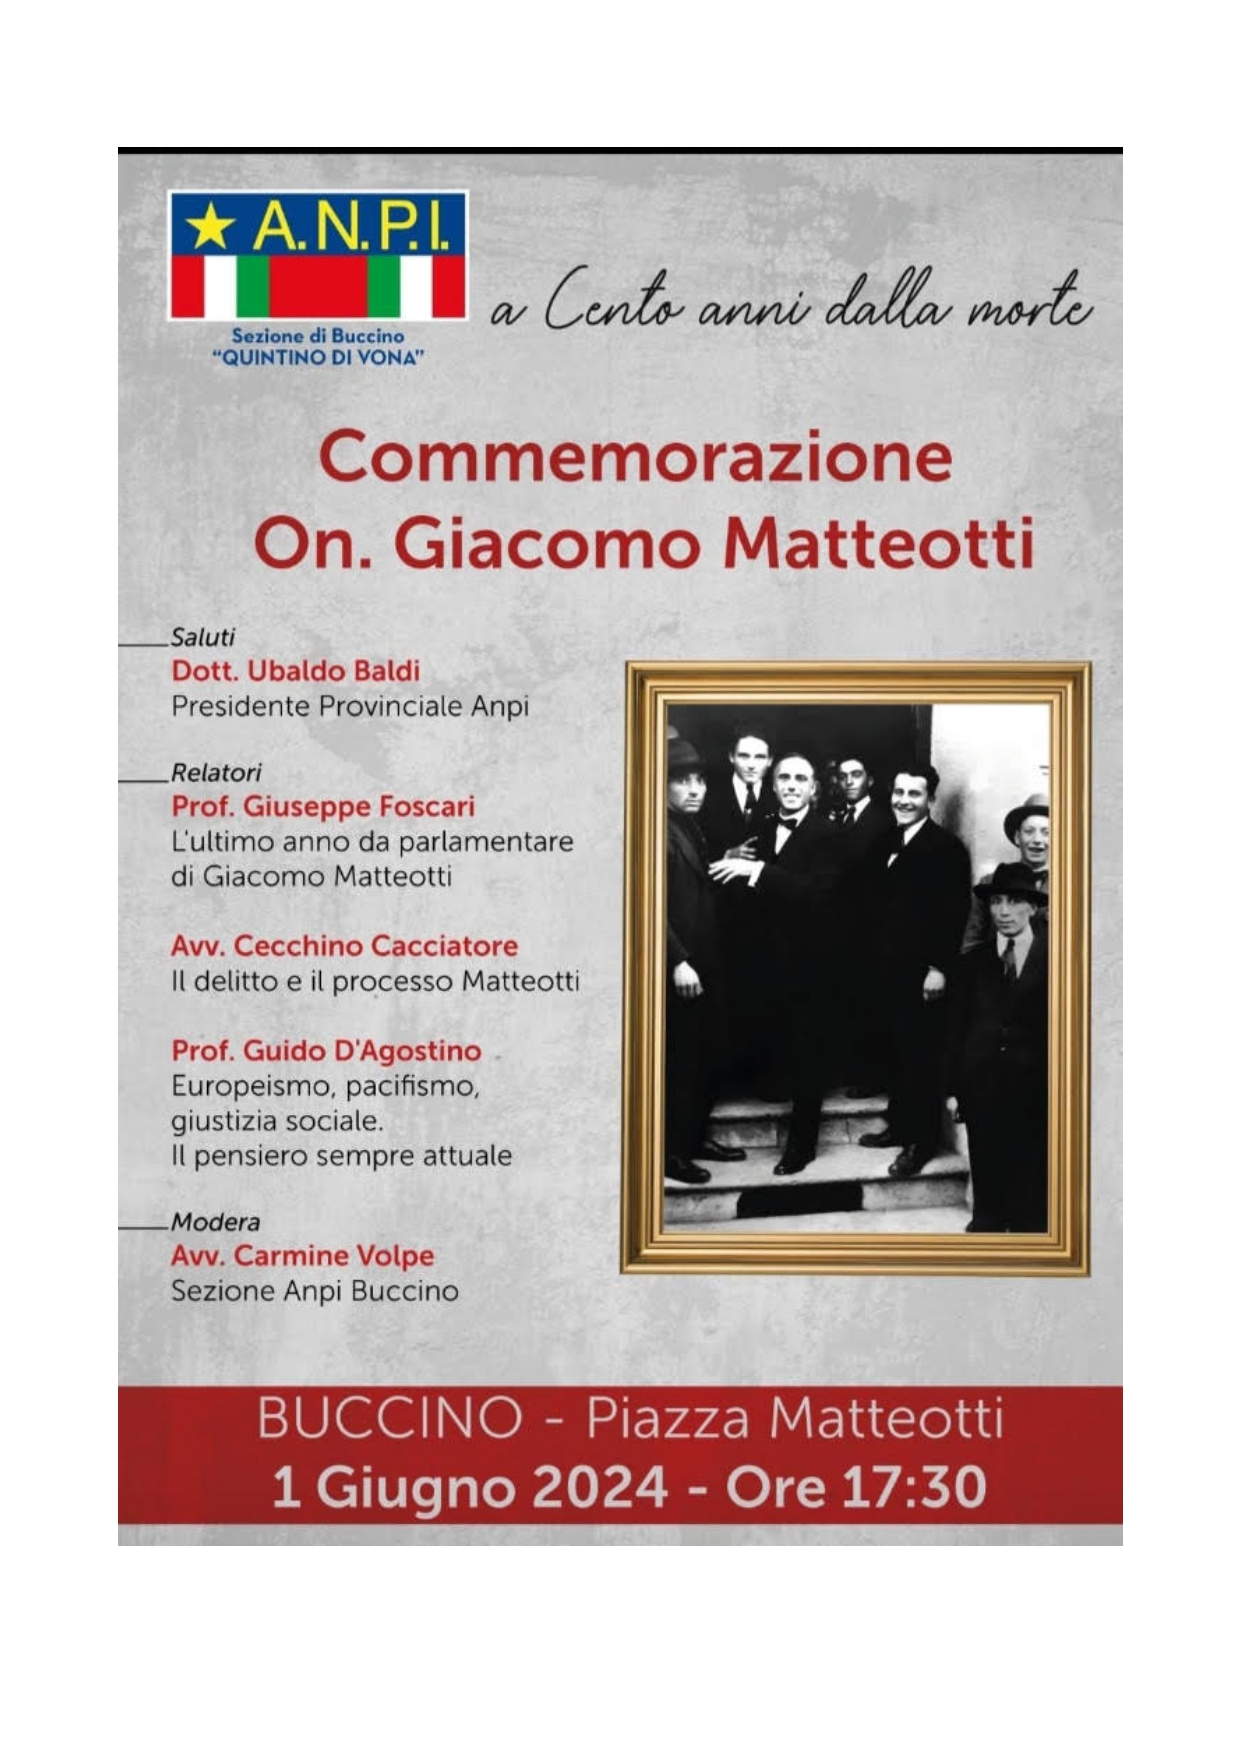 Buccino: Anpi, commemorazione on. Giacomo Matteotti